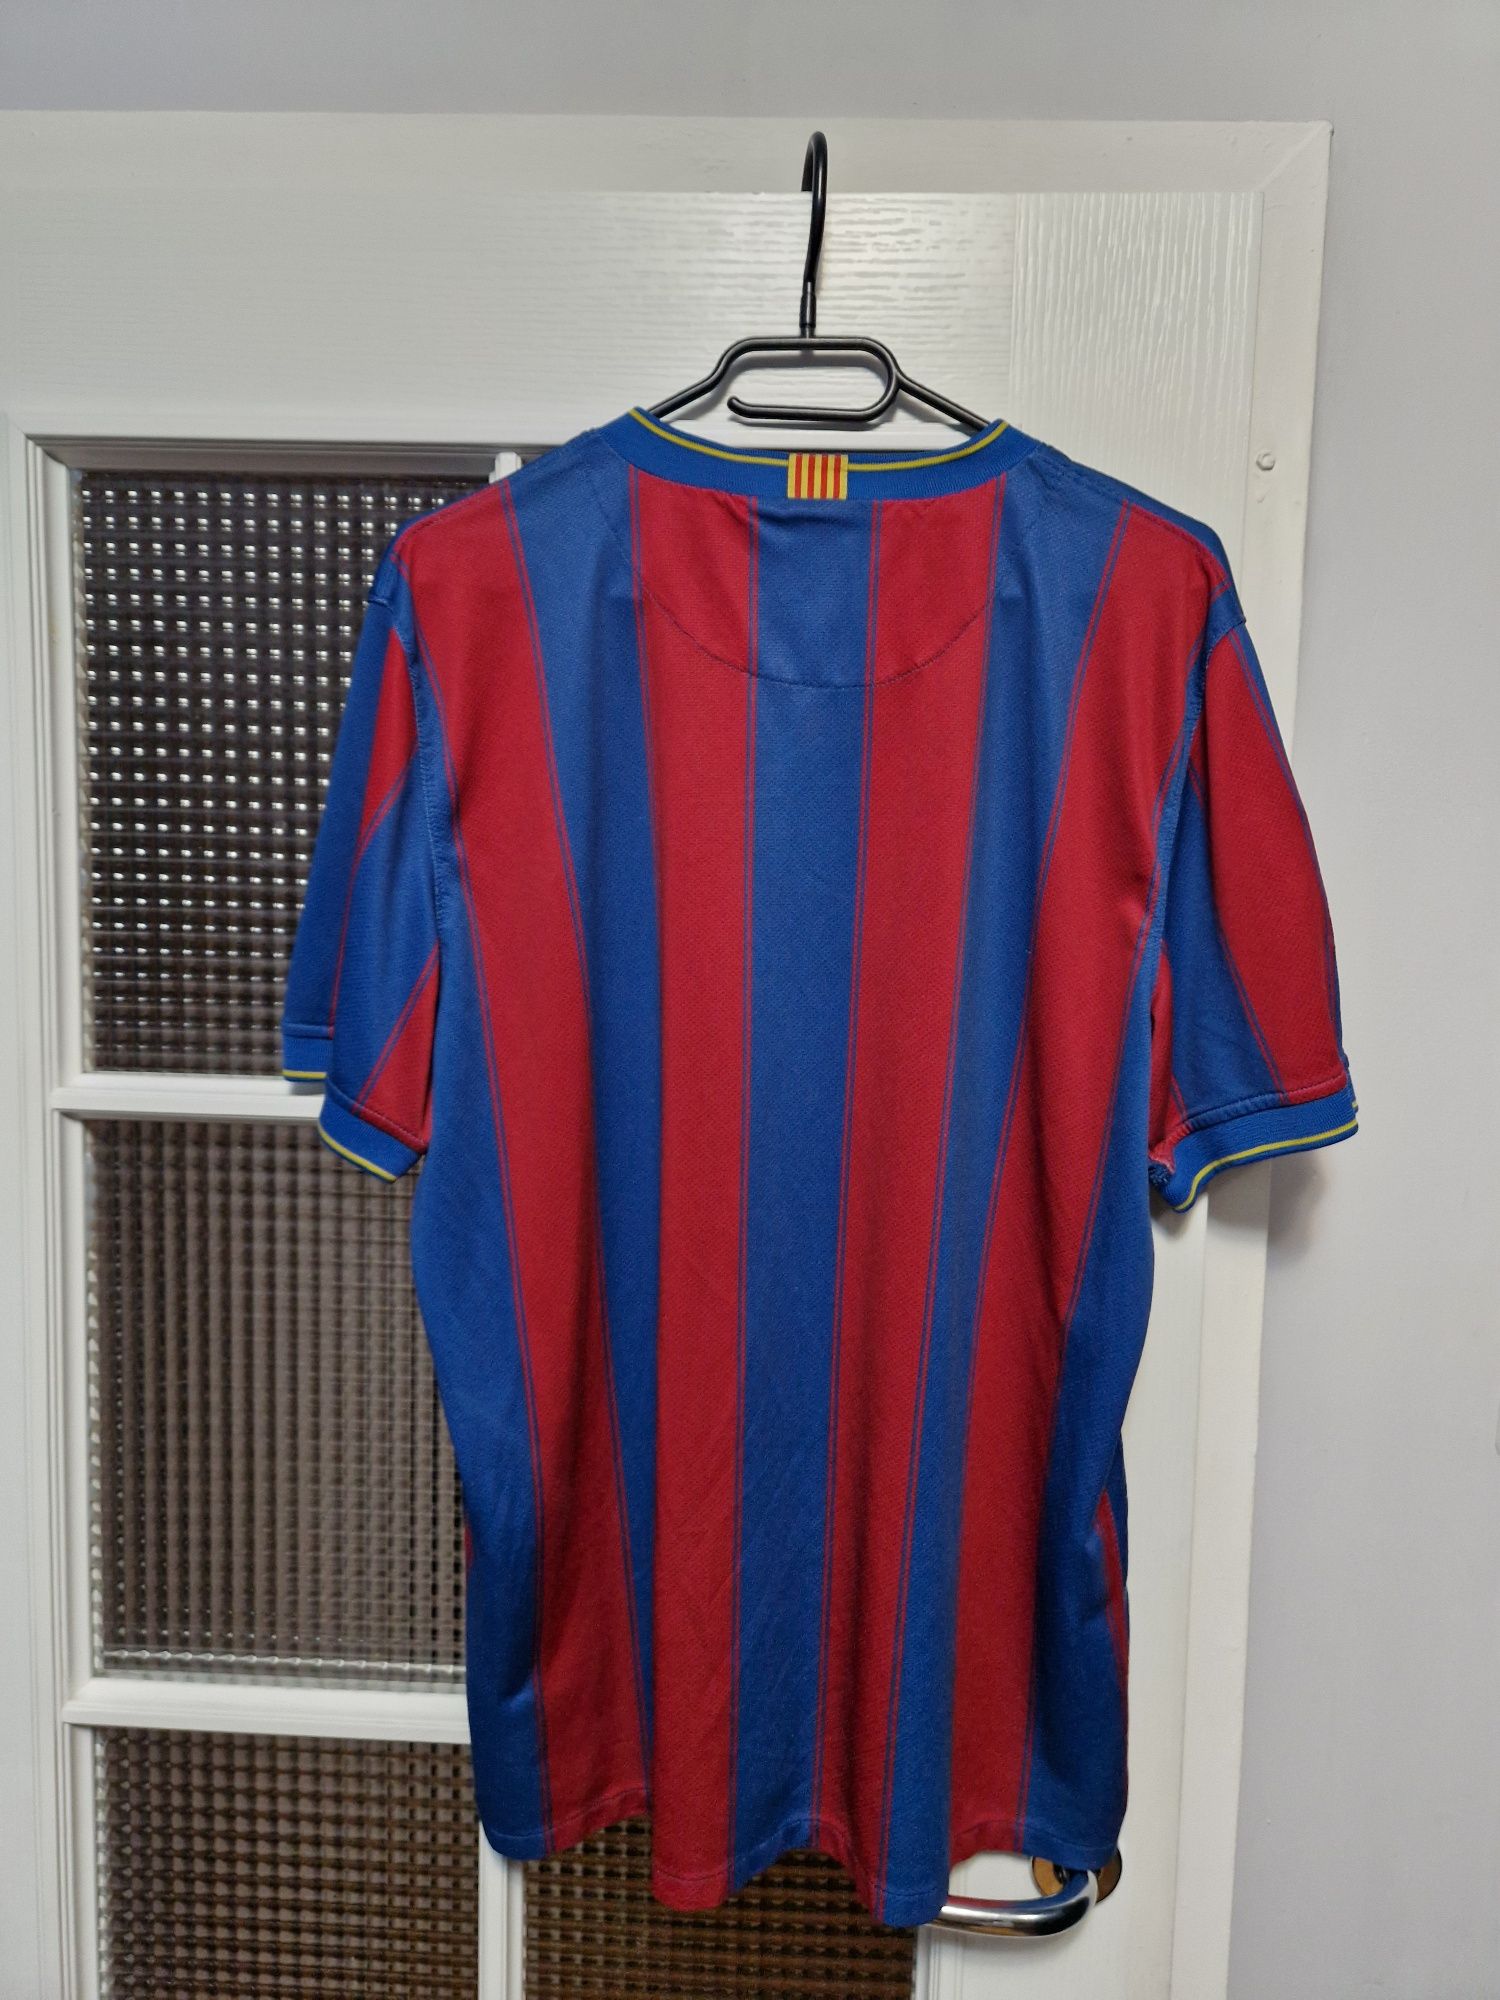 Koszulka Piłkarska Domowa Barcelona 2009/2010 Rozmiar L